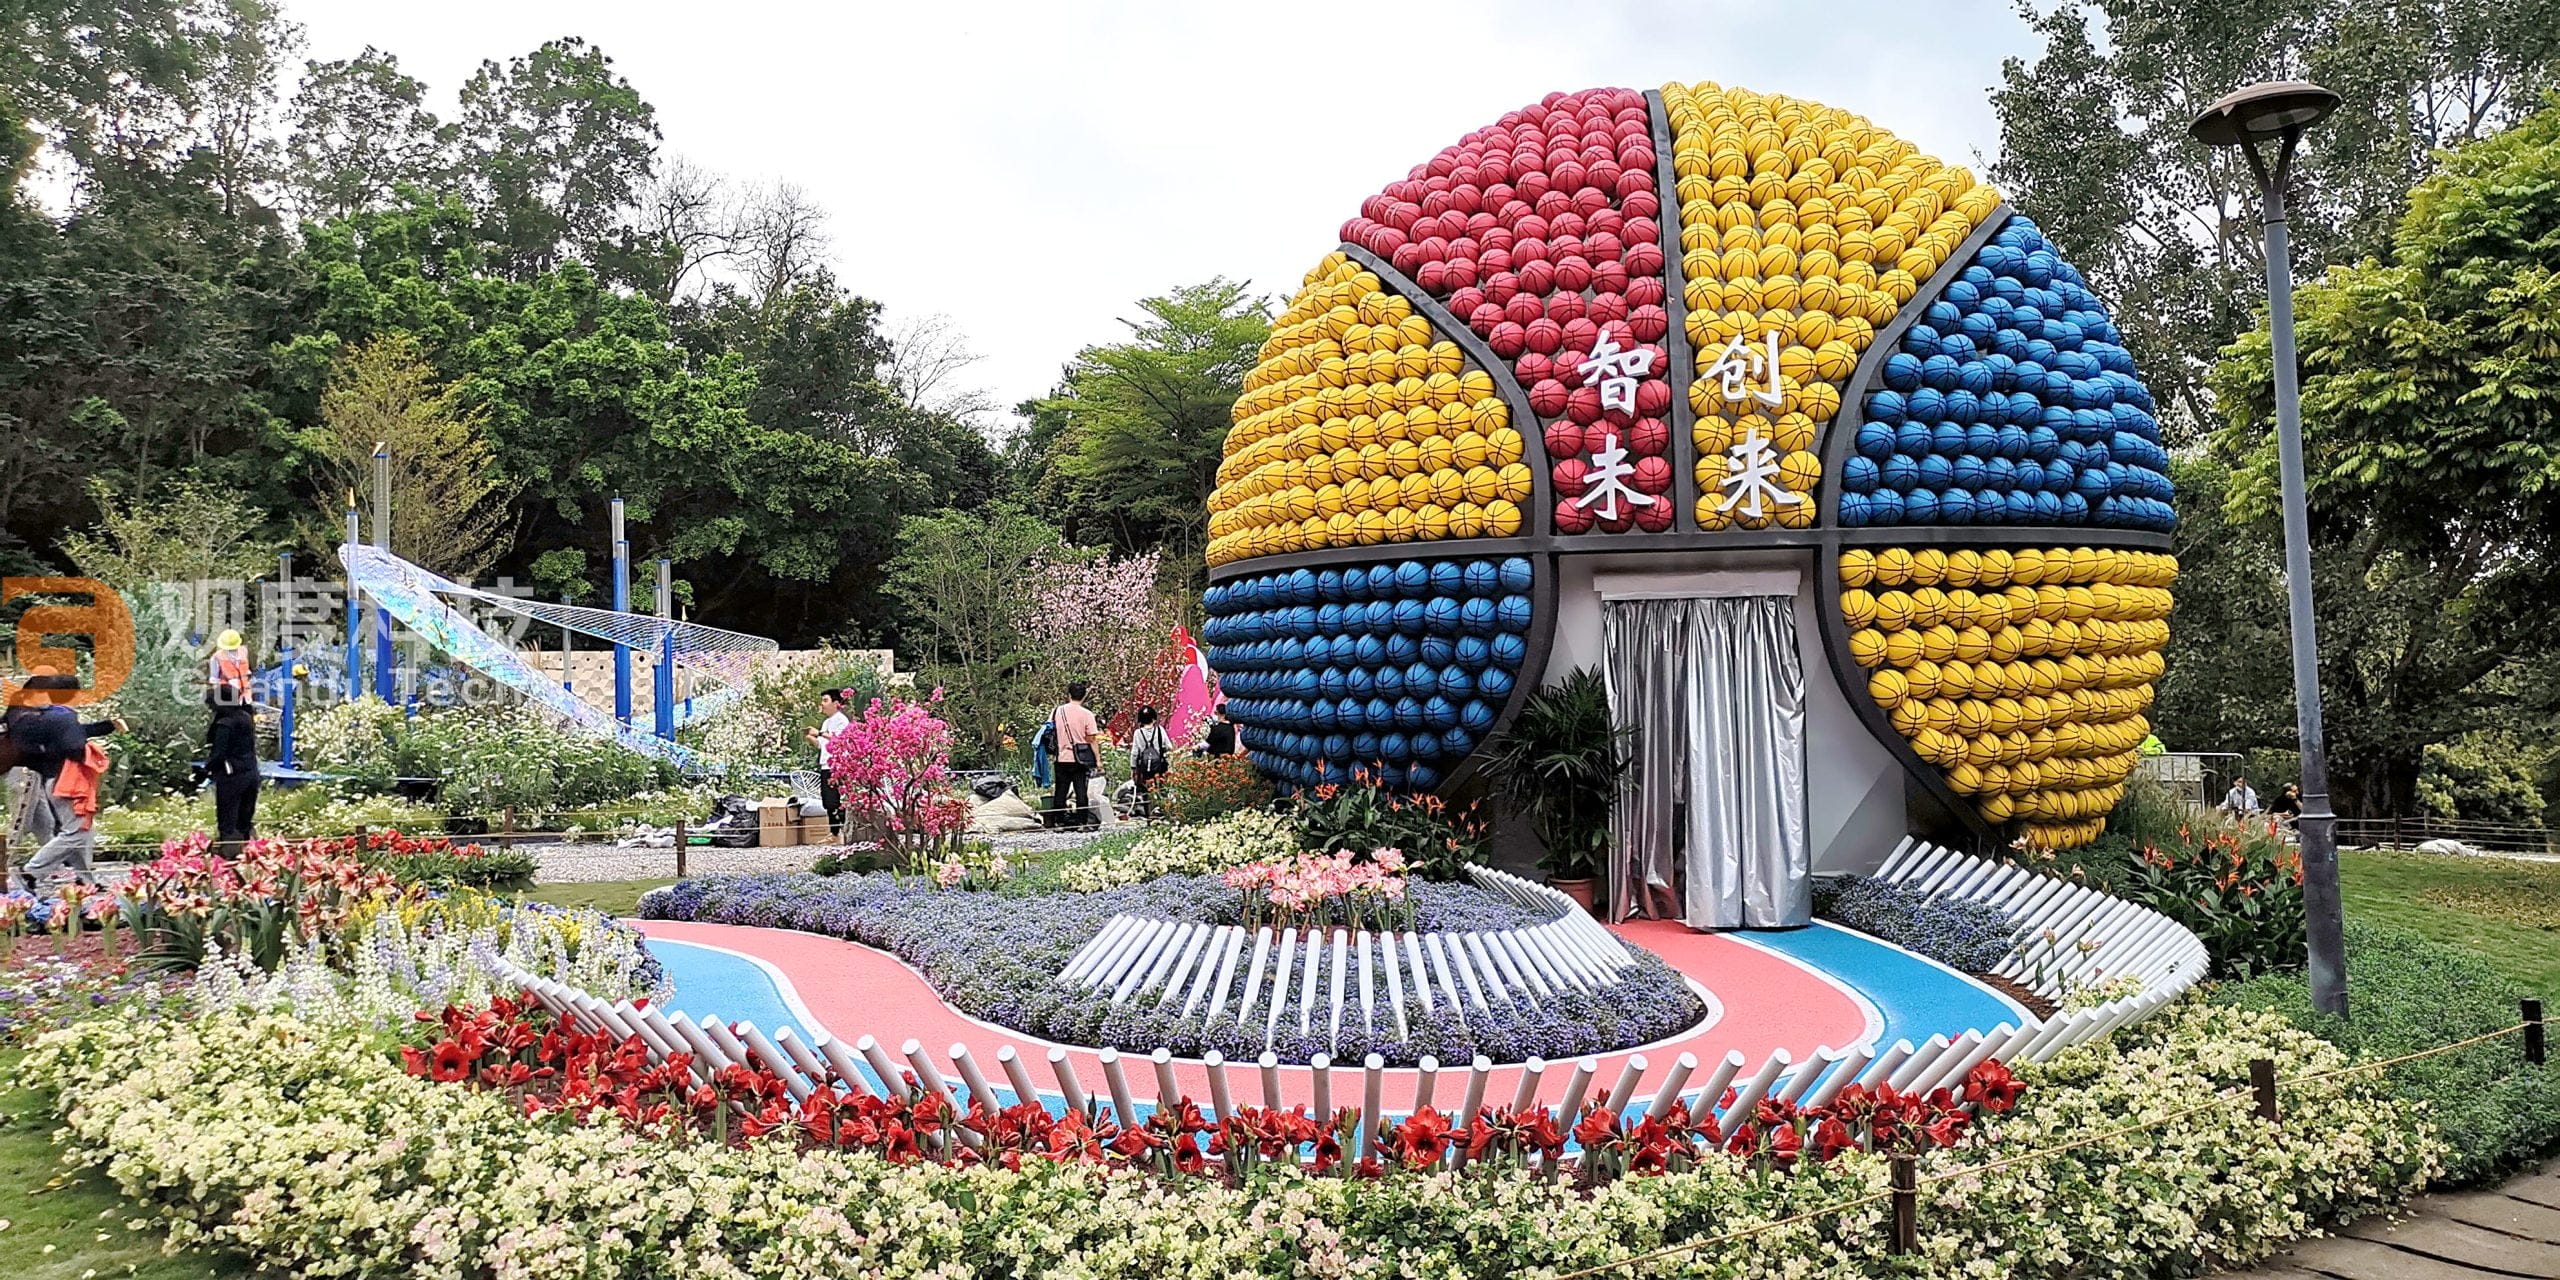 【观度球幕案例】2022年深圳植物园—篮球造型设计的球幕展馆